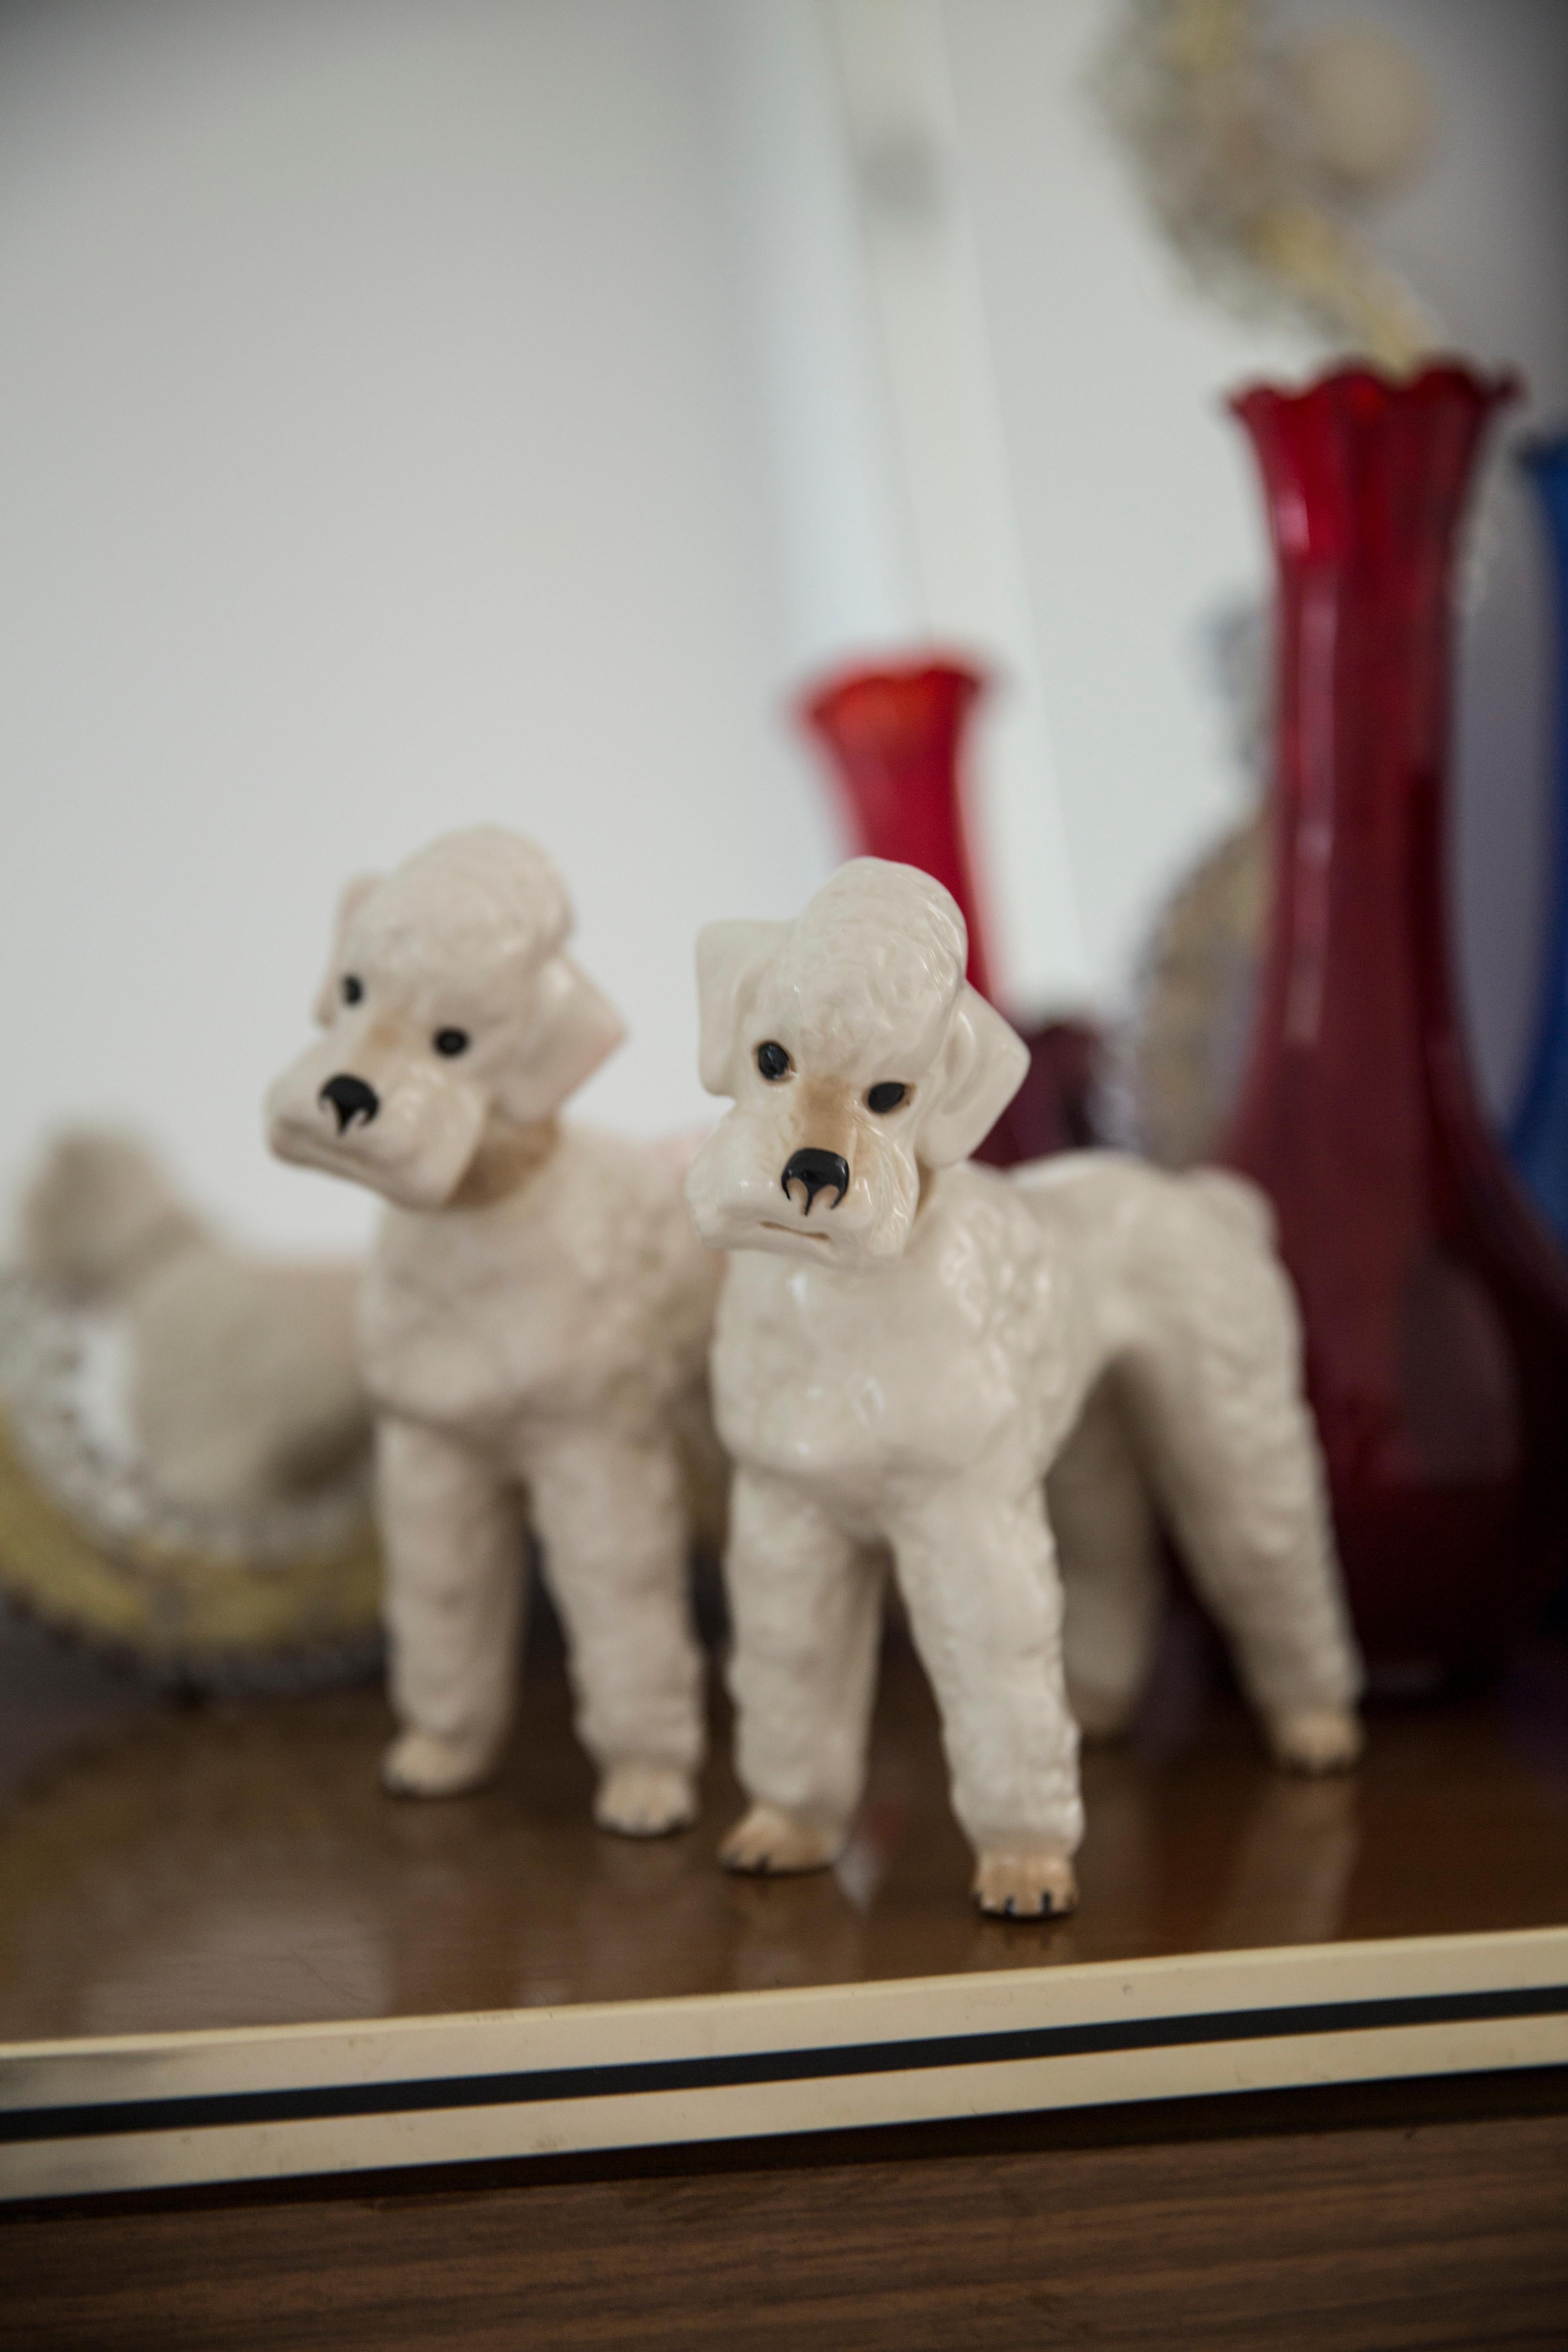 Bemalte Keramik, guter originaler Vintage-Zustand. 
Beschädigtes Bein - wurde repariert - wie auf den Bildern zu sehen. 
Schöne und einzigartige dekorative Skulptur. 
Weiße Pudelhund-Skulptur wurde in Italien hergestellt. Nur ein Hund verfügbar.